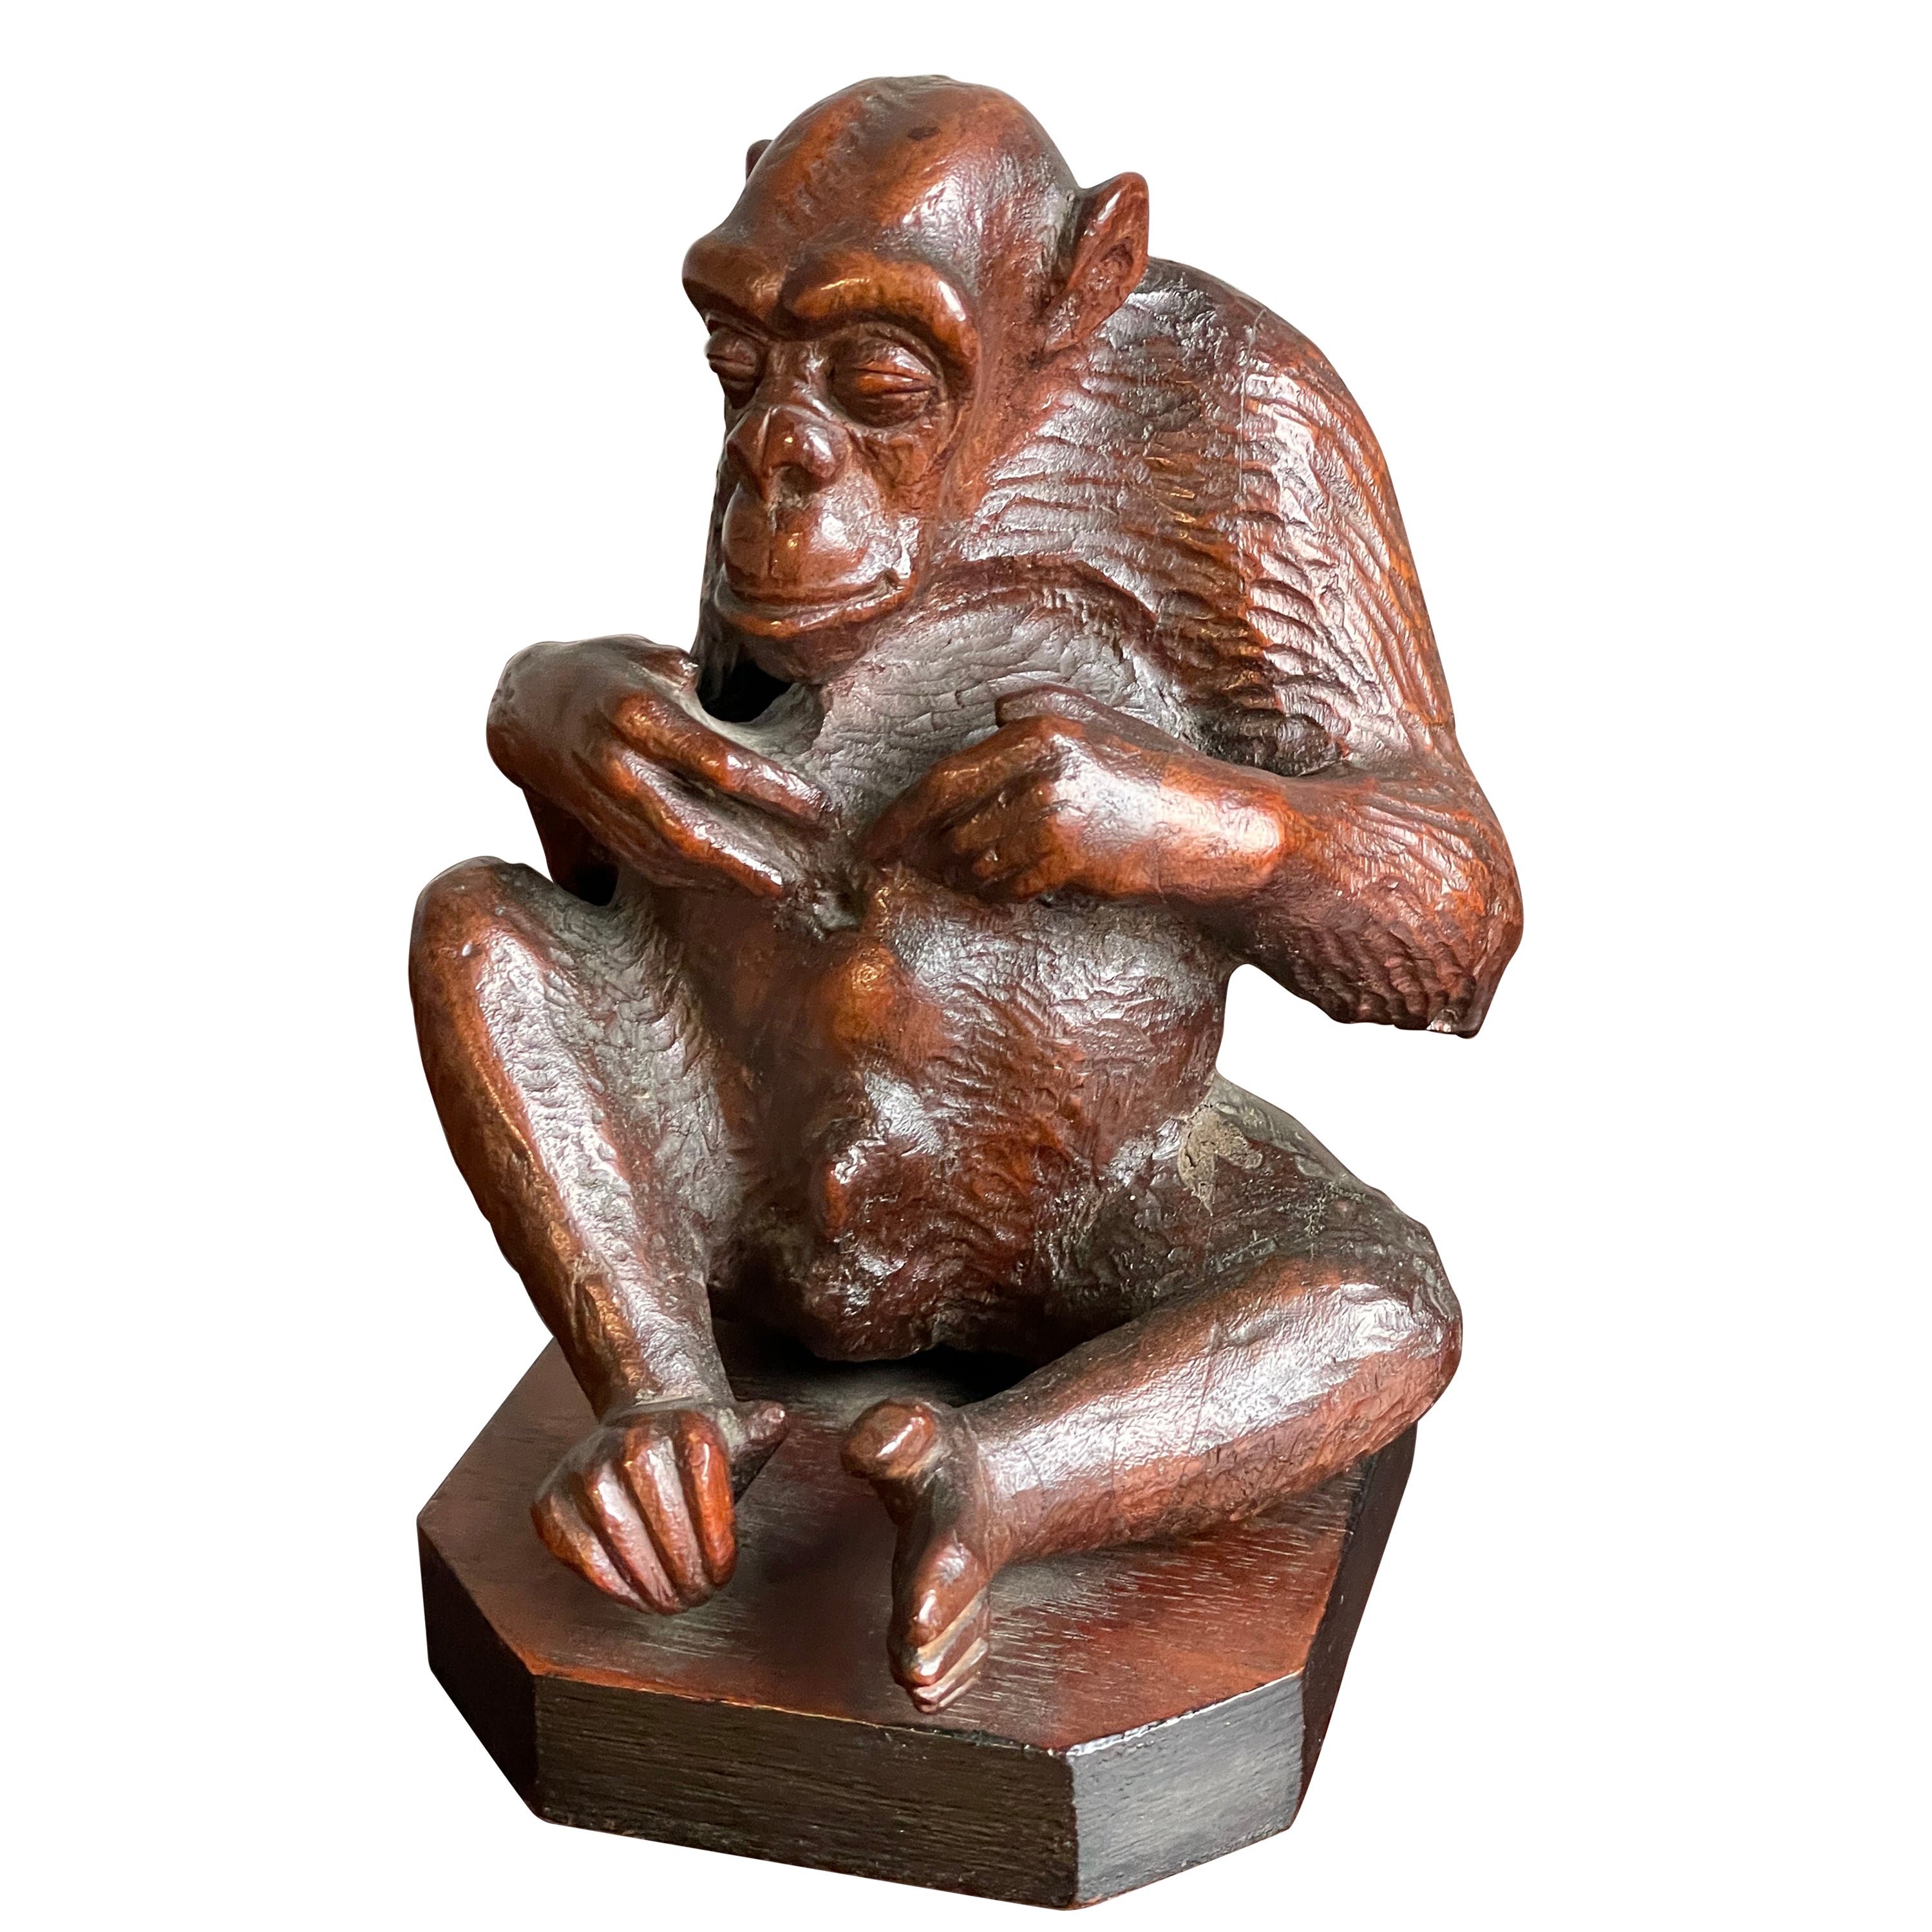 Seltene und wunderbare antike handgeschnitzte Chimpanzee-Skulptur aus Nussbaumholz, Navel Gazing